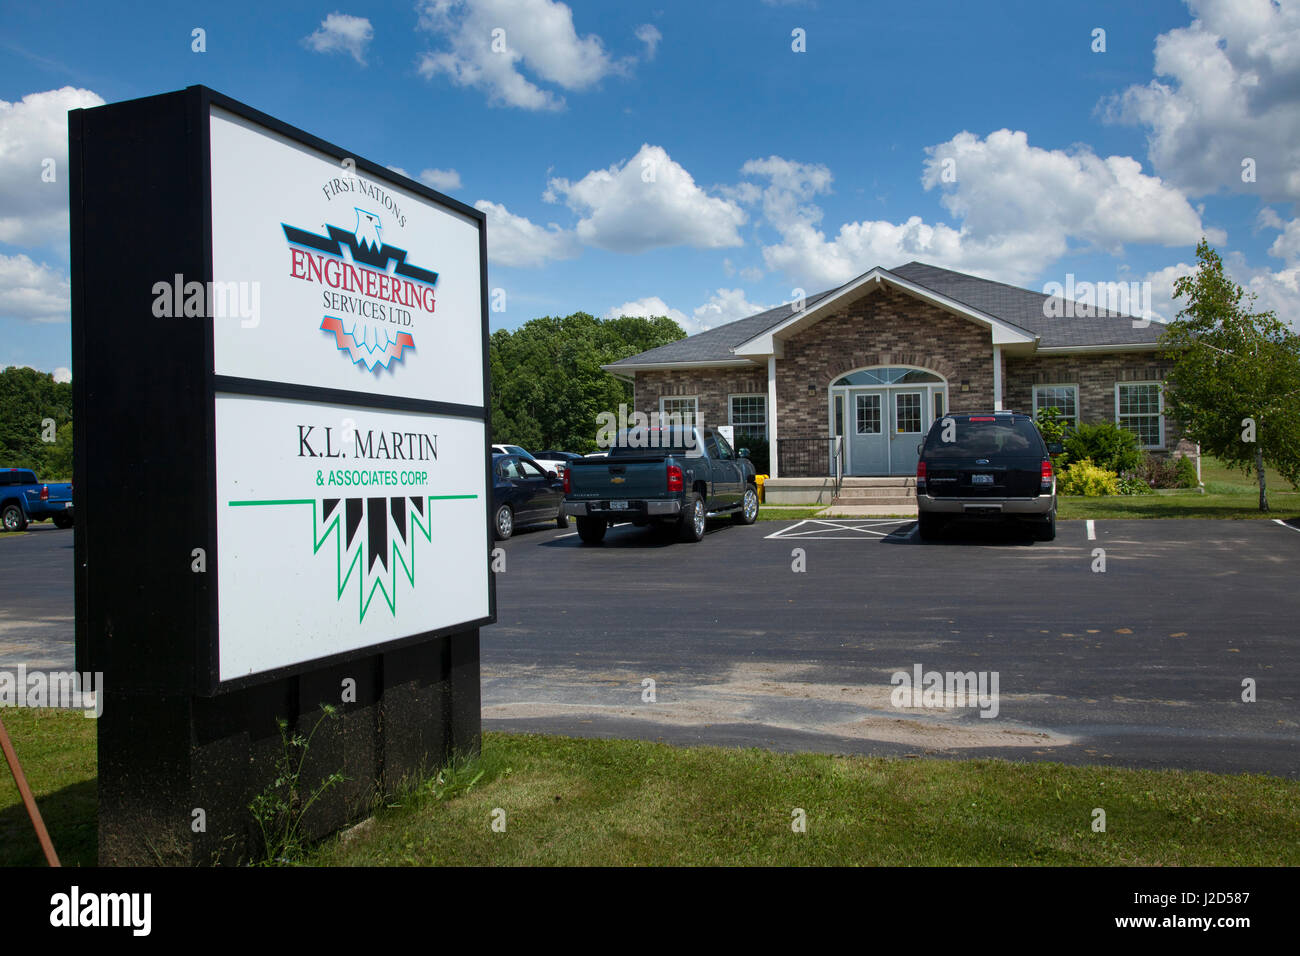 Les Premières Nations des services d'ingénierie et de commerce situé sur les Iroquois Six Nations de la rivière Grand, réservation d'Ohsweken (Ontario) Canada Banque D'Images